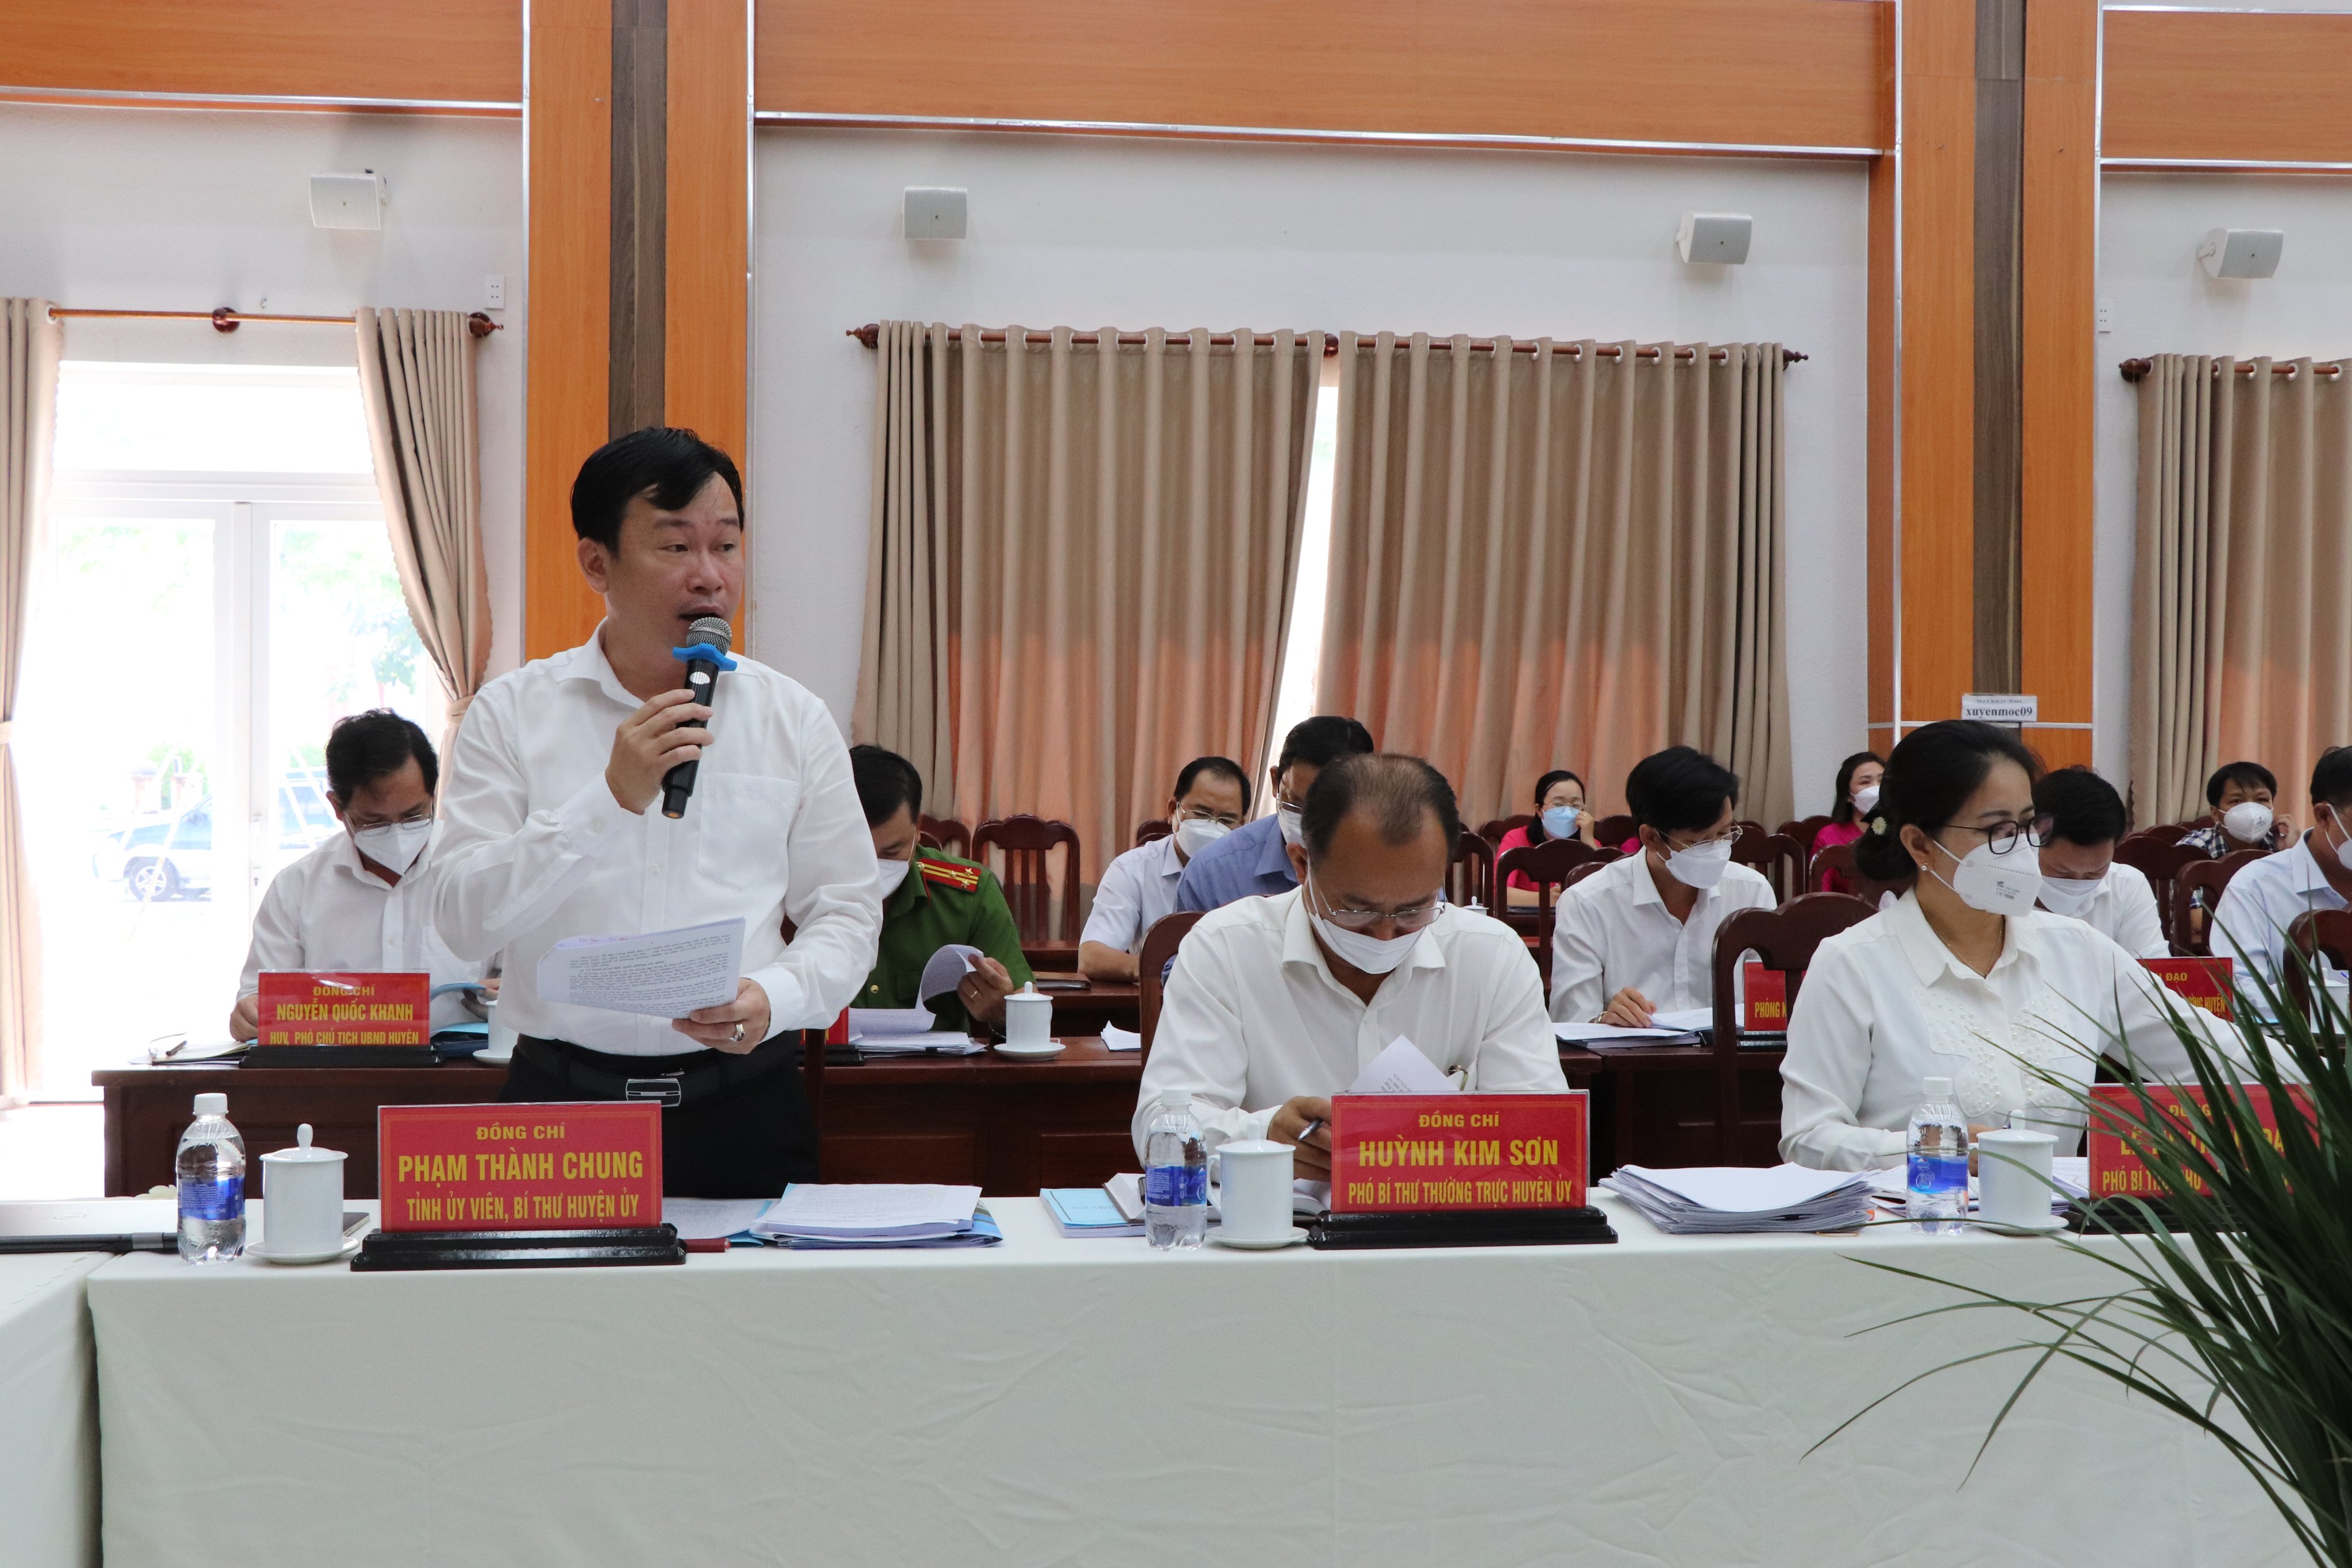 Ông Phạm Thành Chung, Bí thư Huyện ủy Xuyên Mộc báo cáo nhiệm vụ, giải pháp phát triển kinh tế - xã hội của huyện năm 2022. Ảnh: ĐINH HÙNG